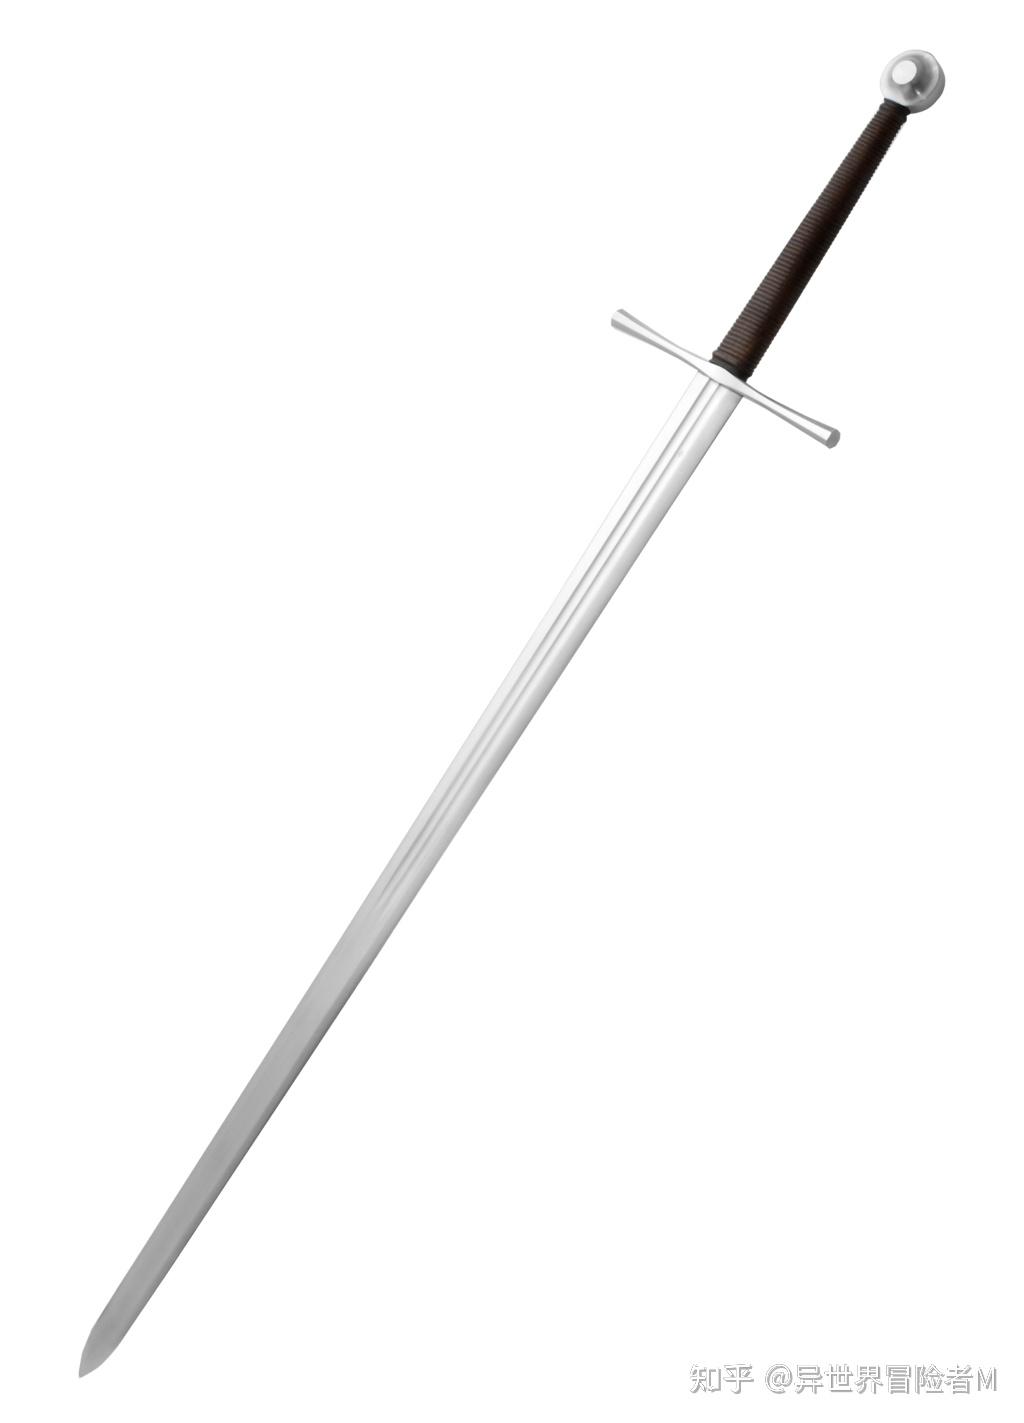 中世纪的长剑,大剑,私生子剑傻傻分不清?